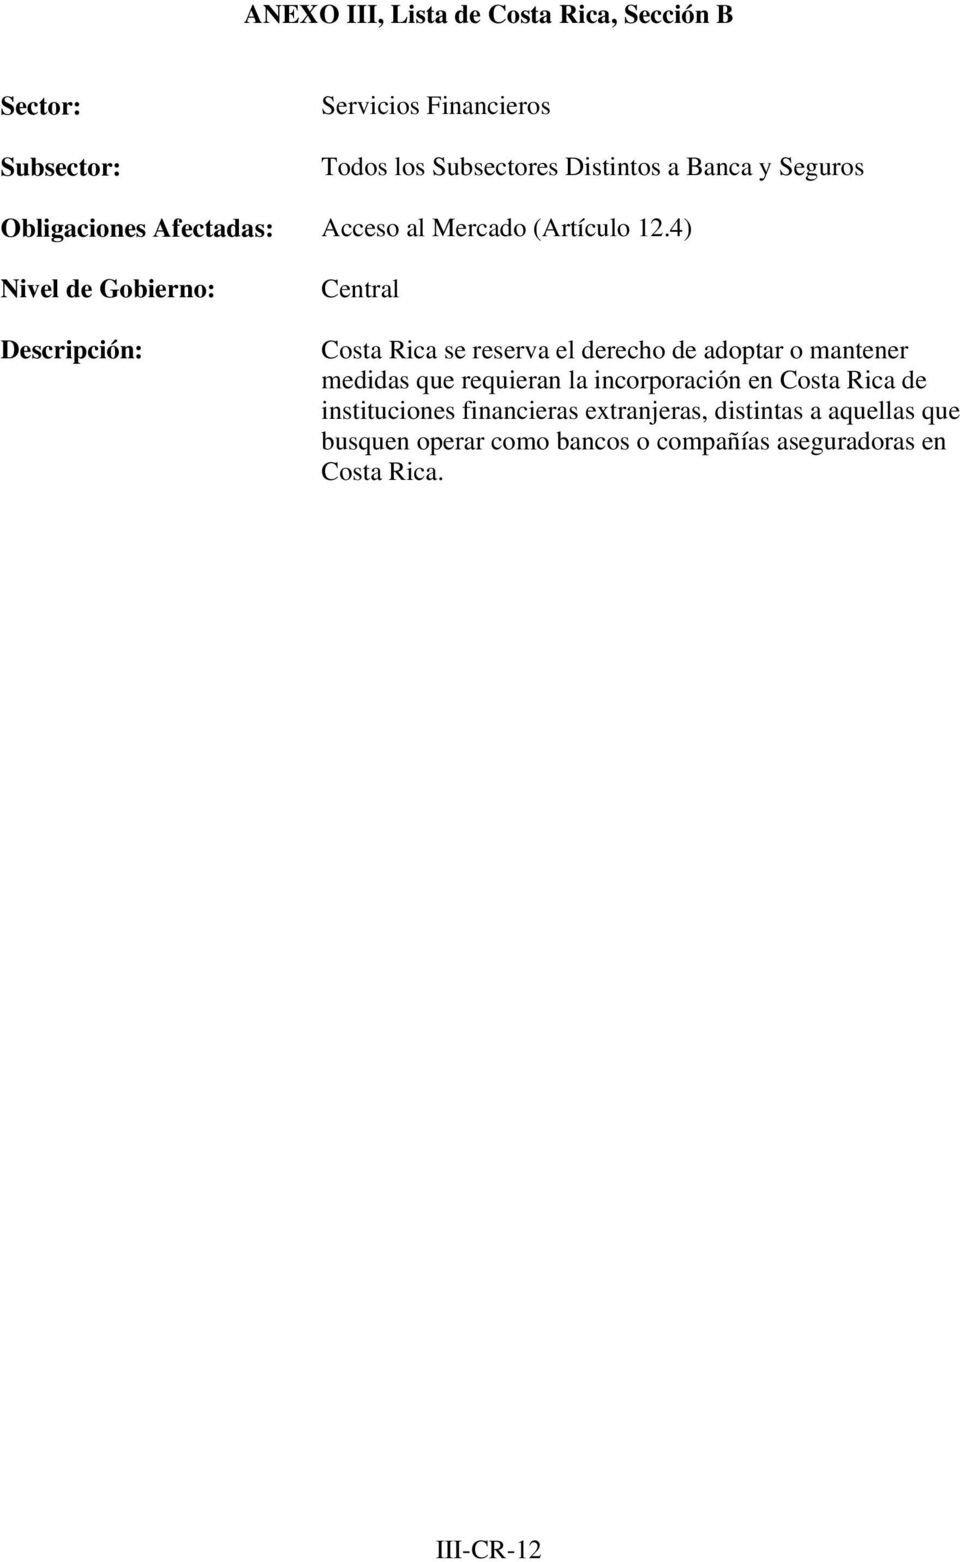 4) Descripción: Costa Rica se reserva el derecho de adoptar o mantener medidas que requieran la